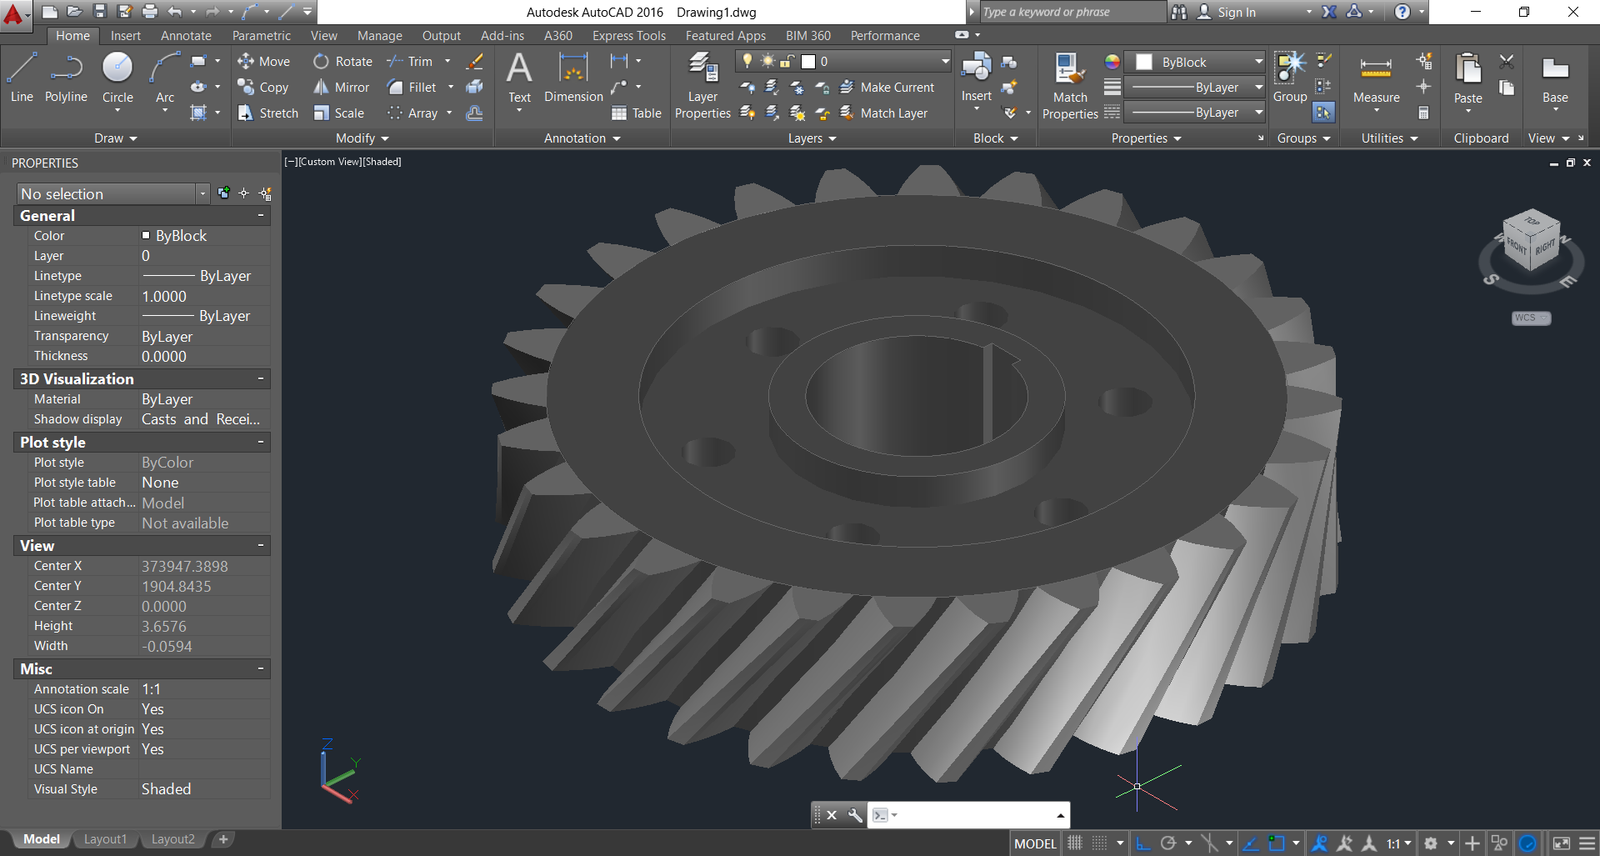 AutoCAD Plant 3D Toolset | 3D Plant Design & Layout Software | Autodesk